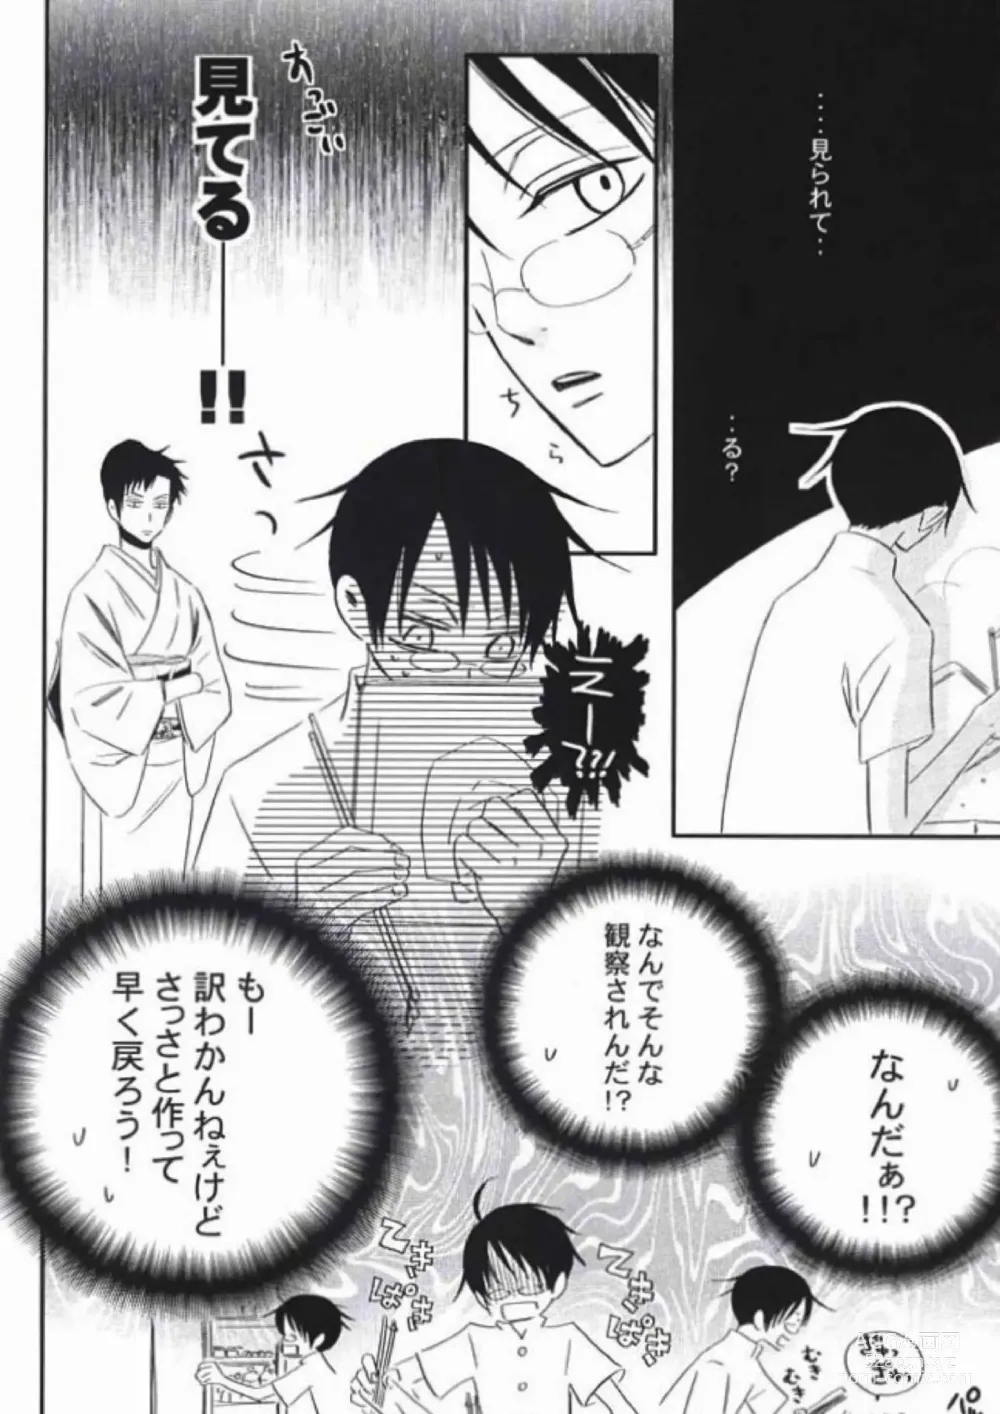 Page 6 of doujinshi Natsu no Shizuku